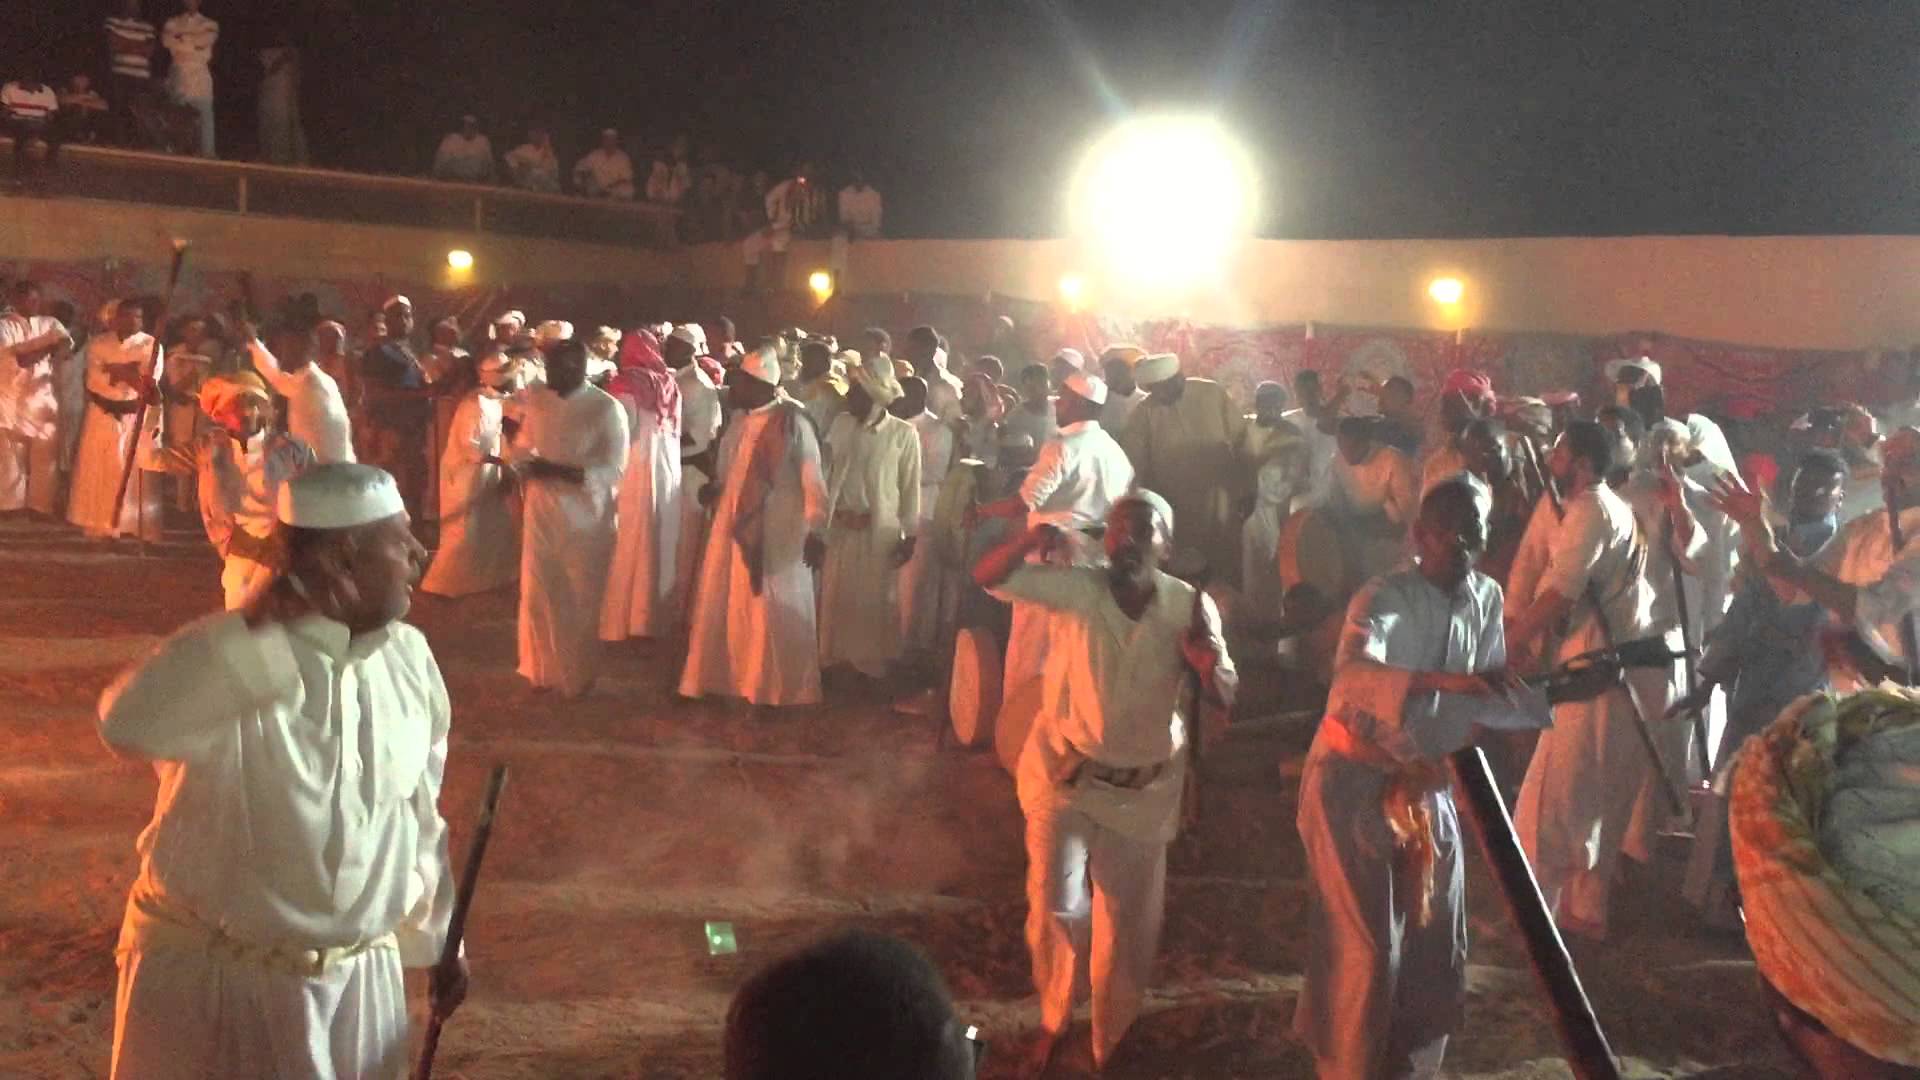 نزاع سعودي أفريقي حول رقصة المزمار هكذا حسمت اليونسكو أصلها فيديو سودافاكس